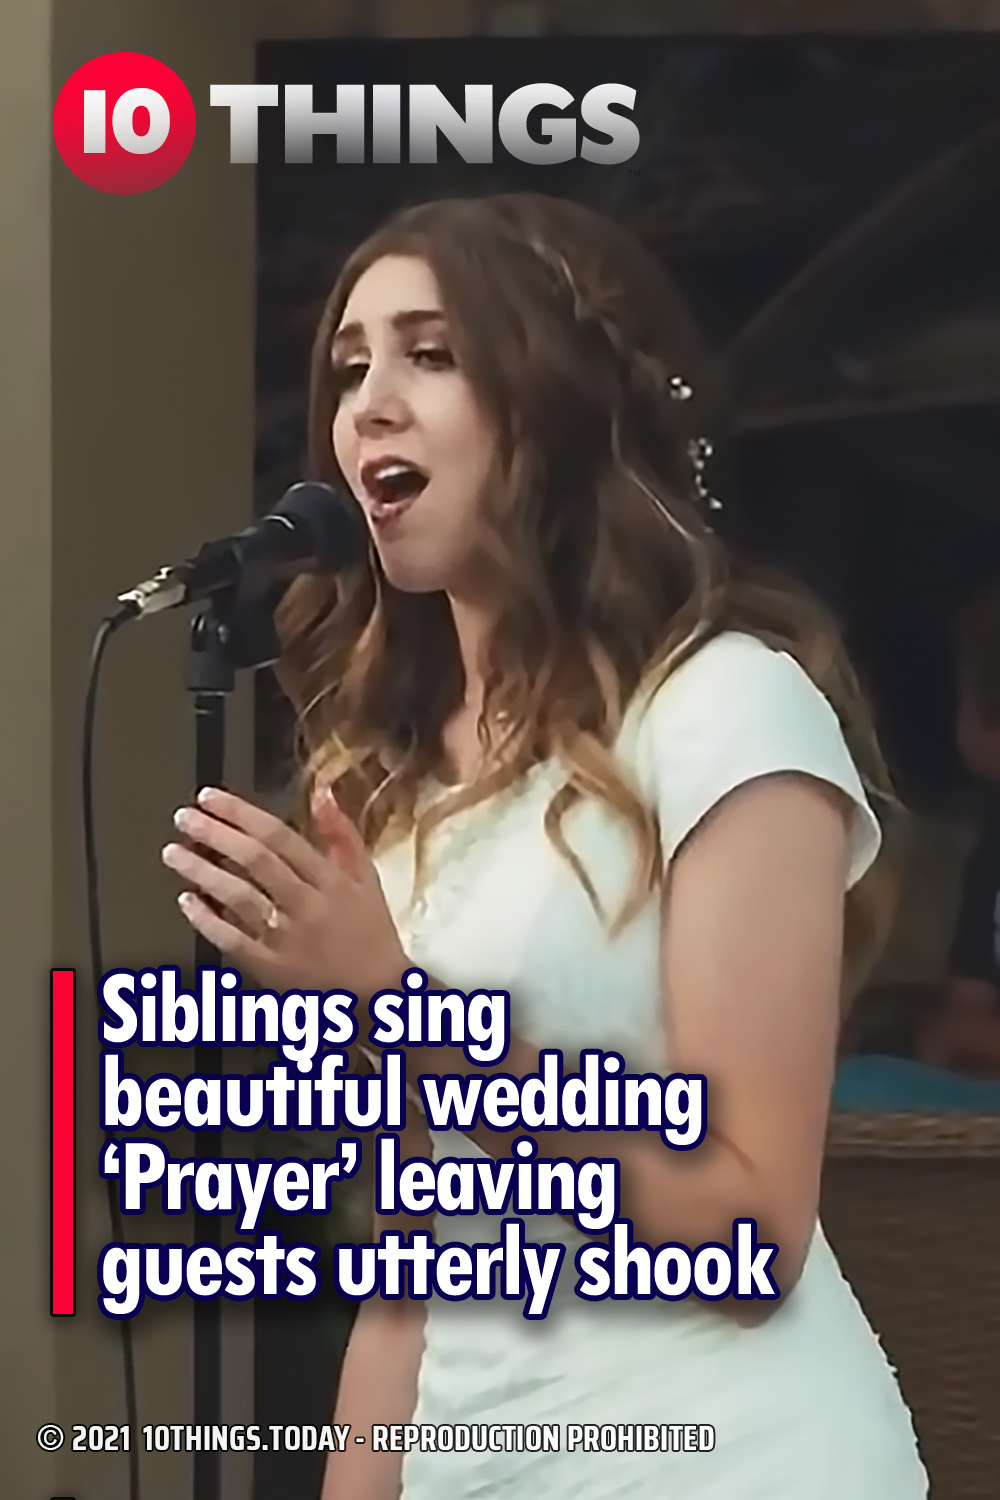 Siblings sing beautiful wedding ‘Prayer’ leaving guests utterly shook